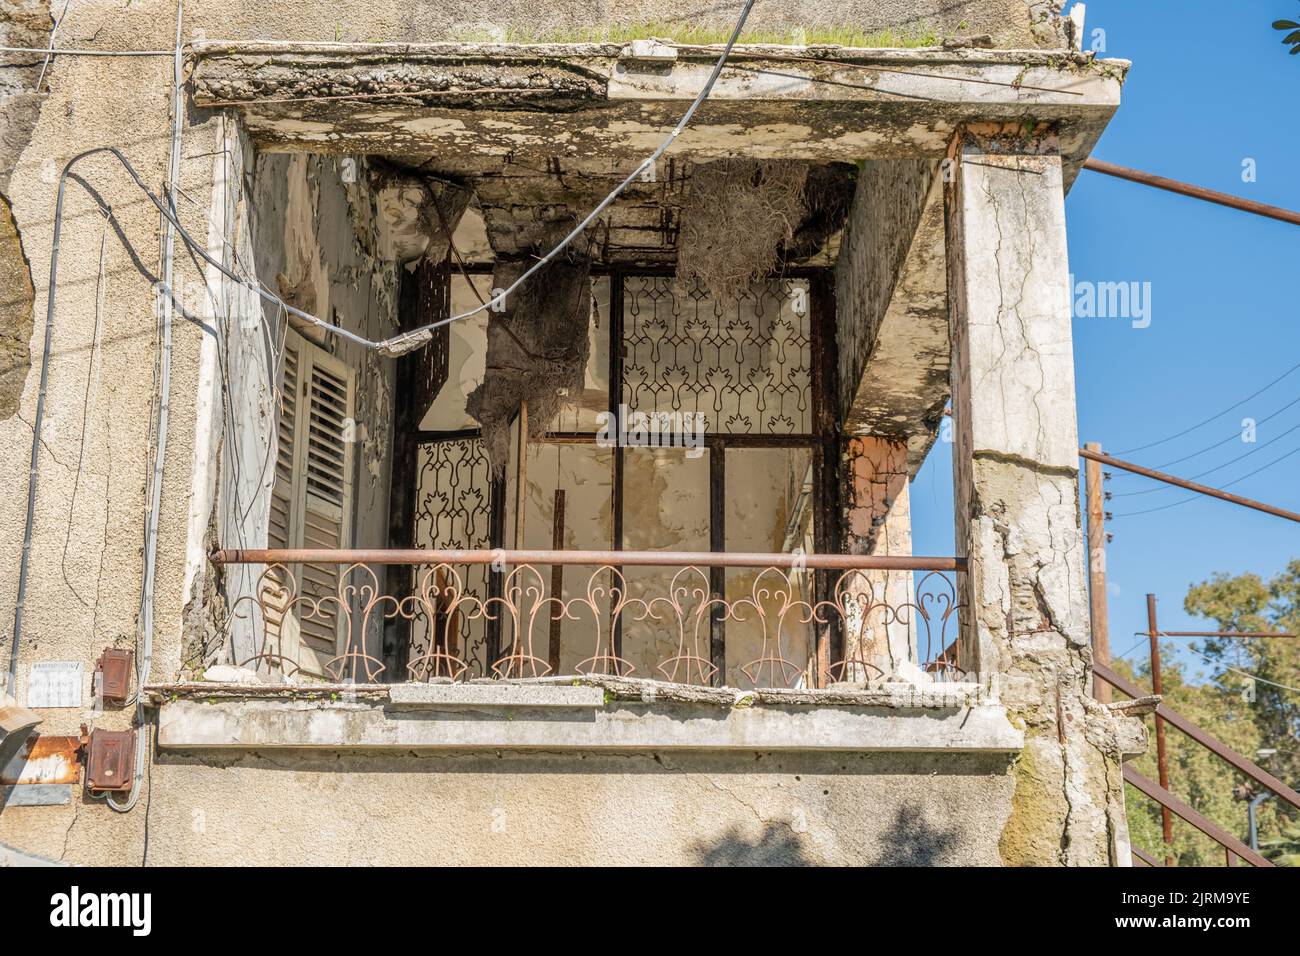 Balcone in rovina, balcone in rovina vista in una città abbandonata, Varosha a Famagosta, Cipro. Foto Stock